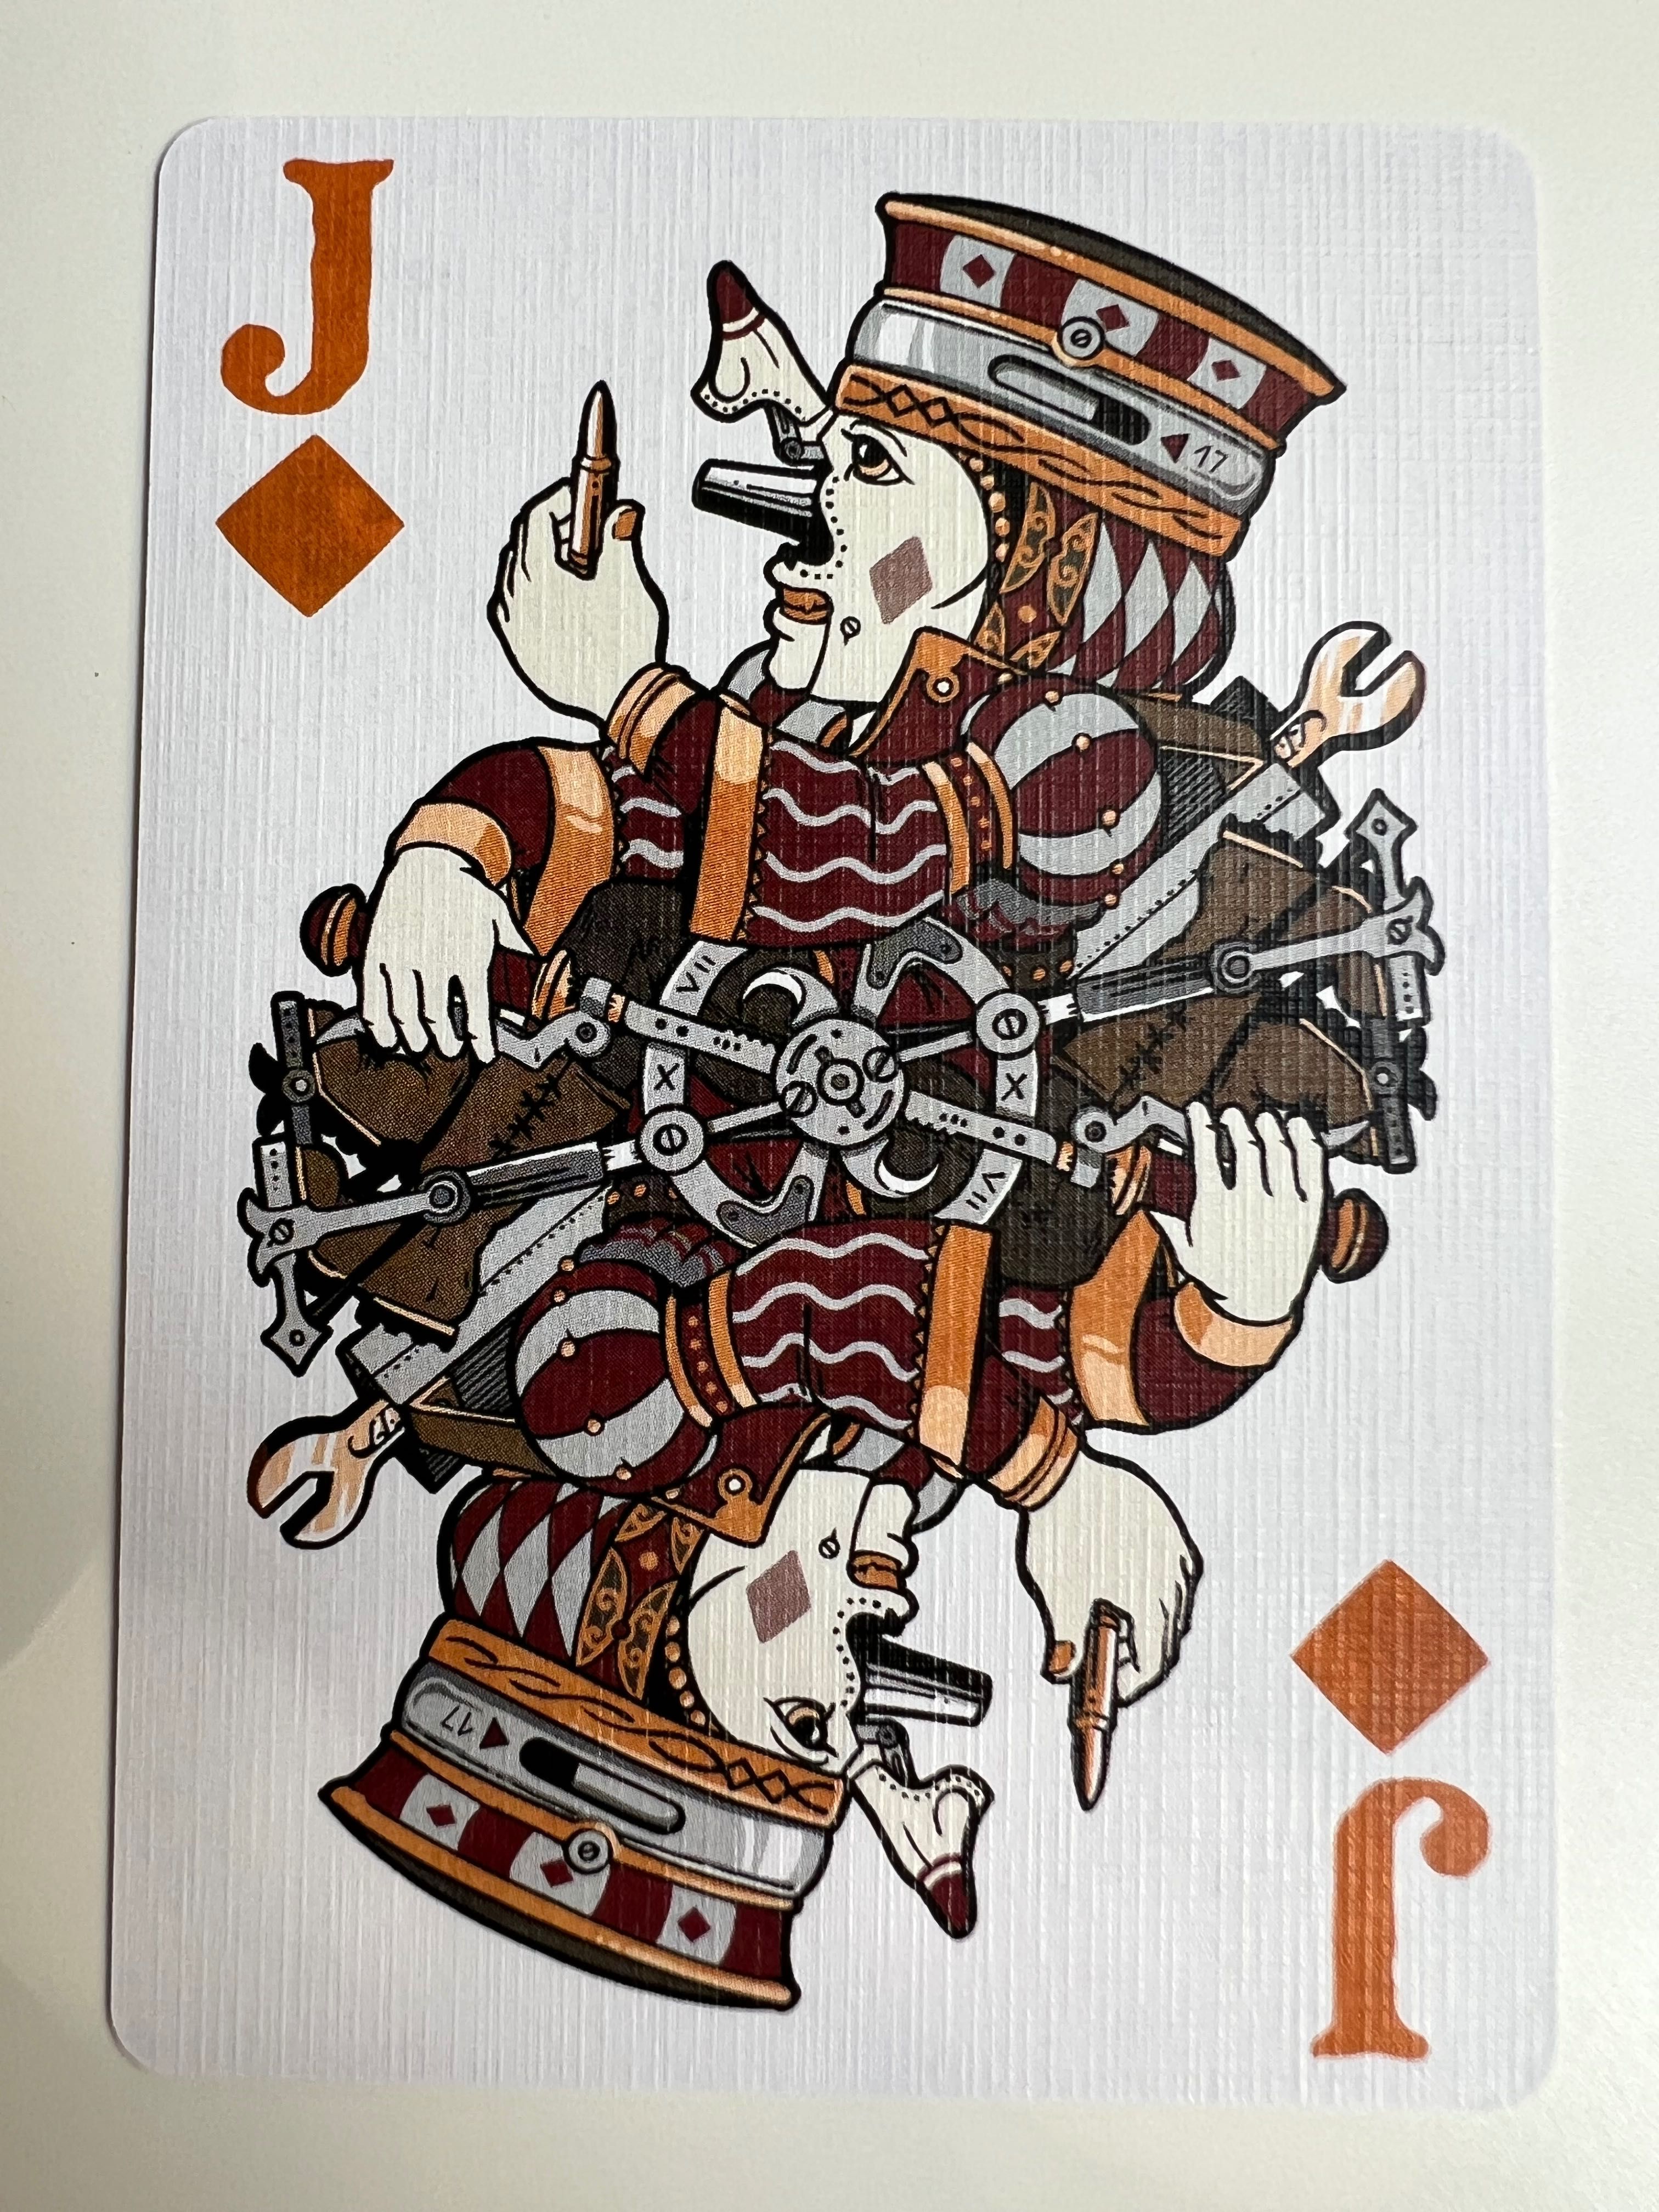 Talia Kart do gry w Pokera Odd Fellows od Stockholm17 - Kolekcjonerska